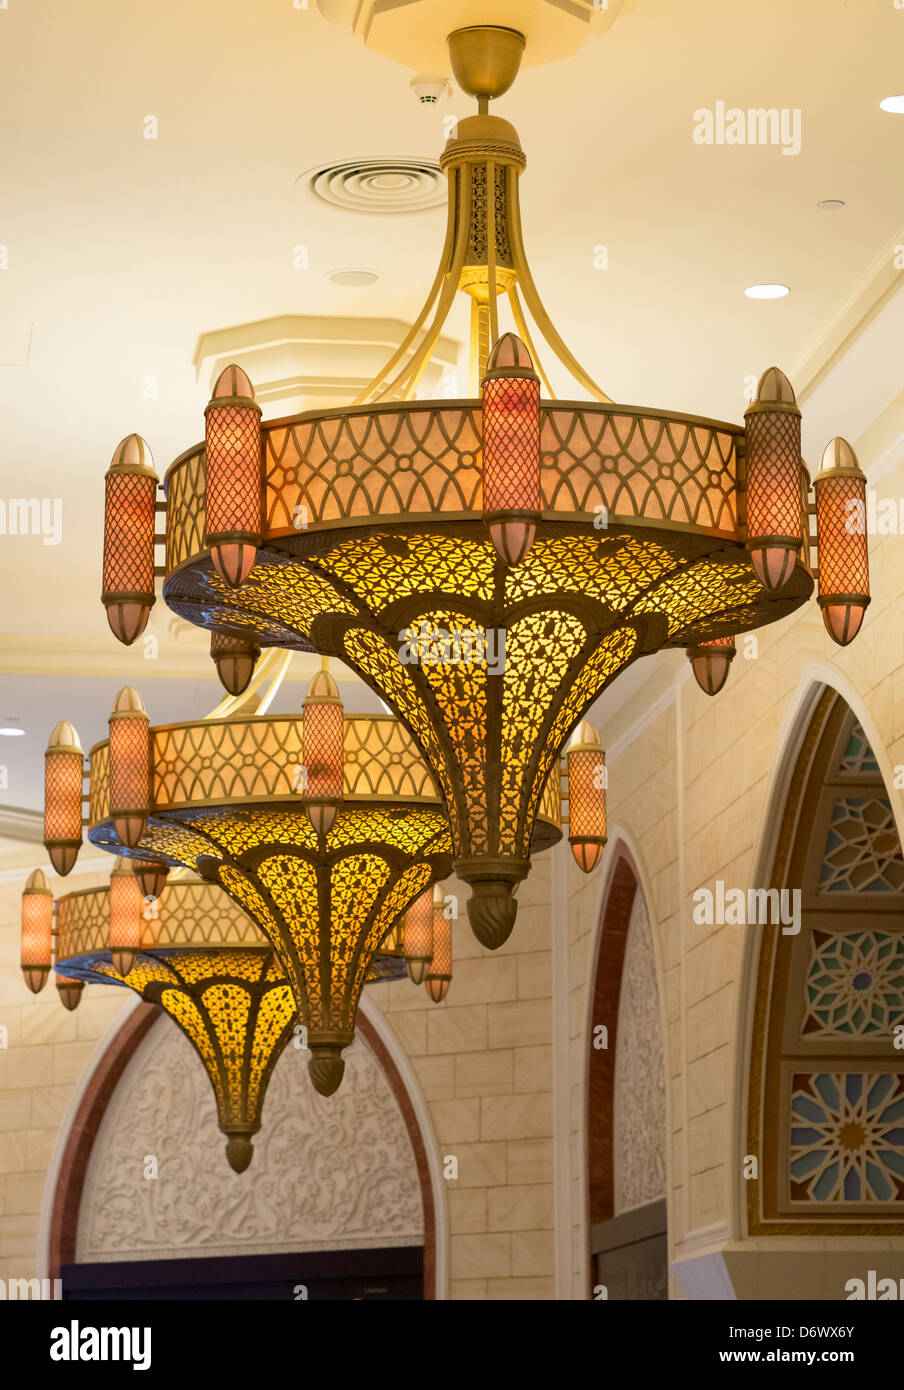 Detalles del Zoco en el interior del centro comercial de Dubai, en los Emiratos Árabes Unidos, EAU Foto de stock